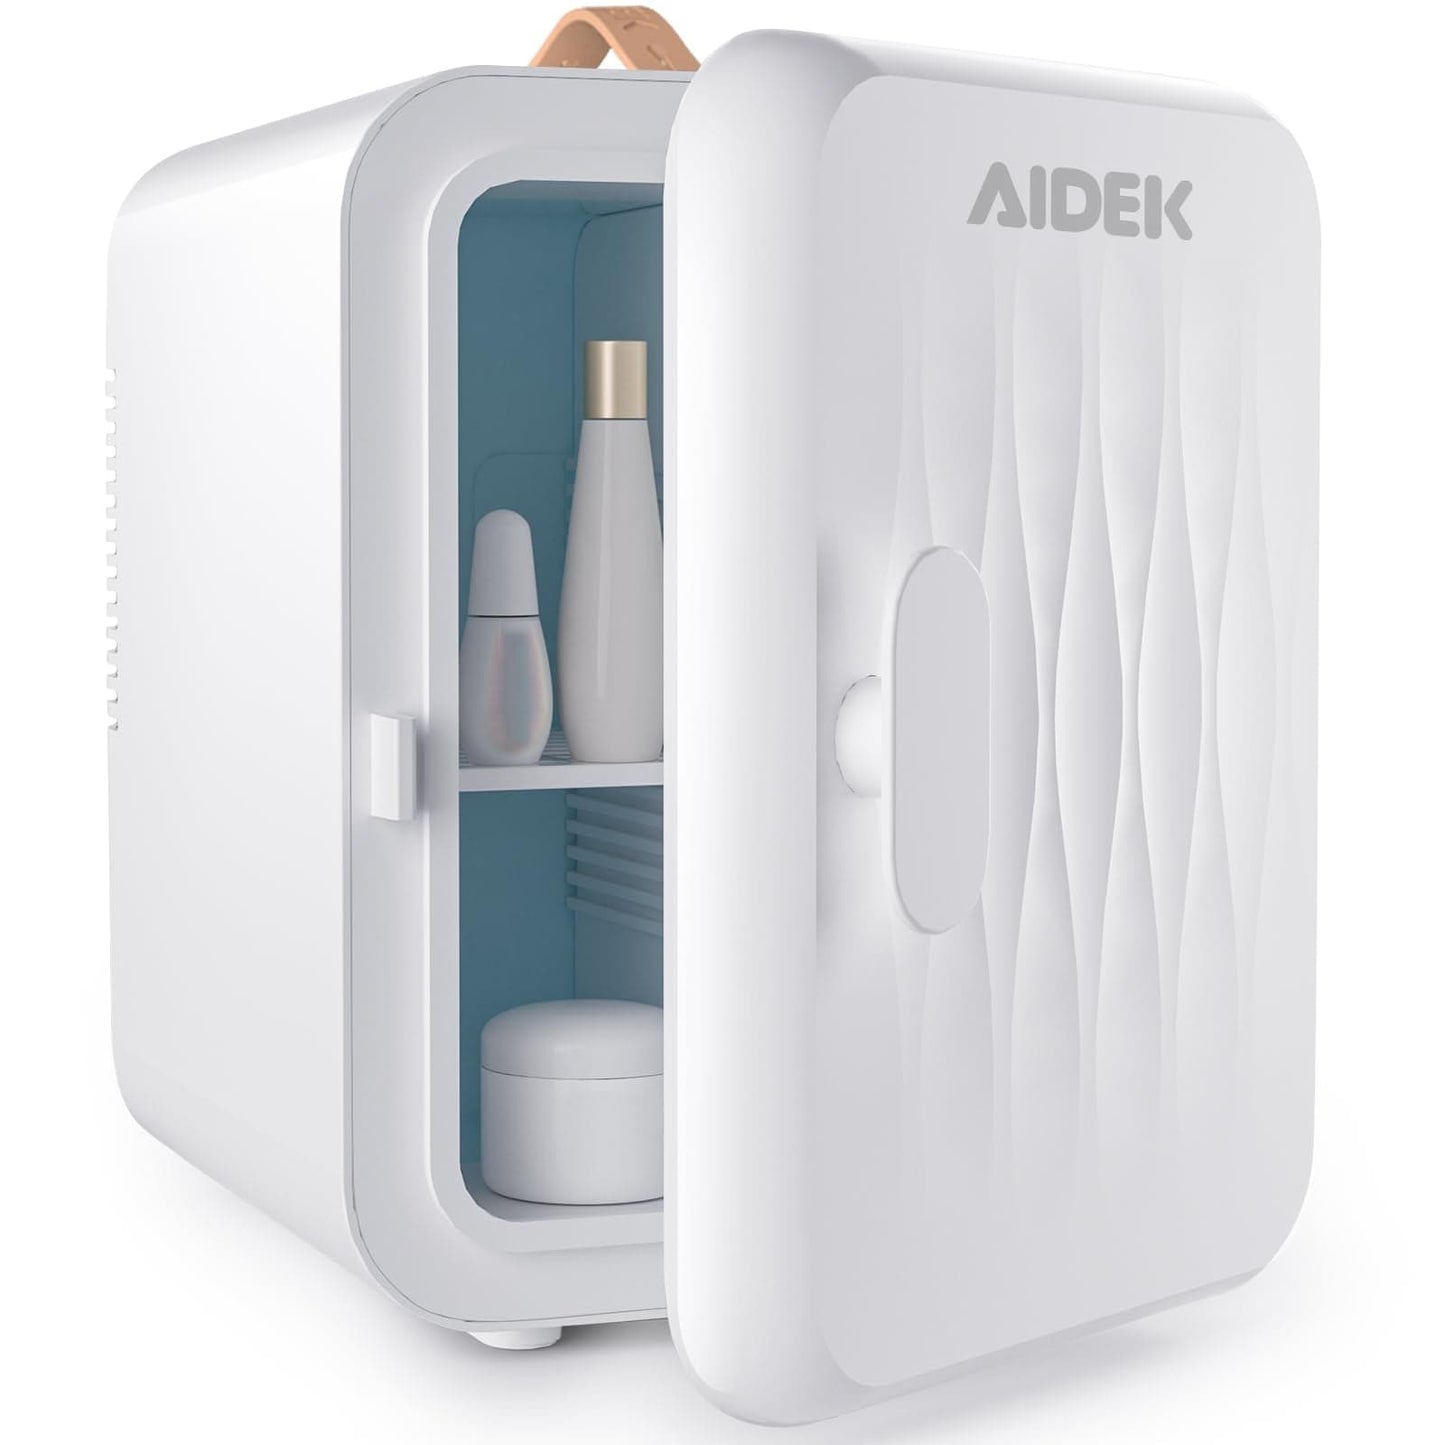 Mini refrigerador del maquillaje cosmético de AIDEK para el cuidado de piel